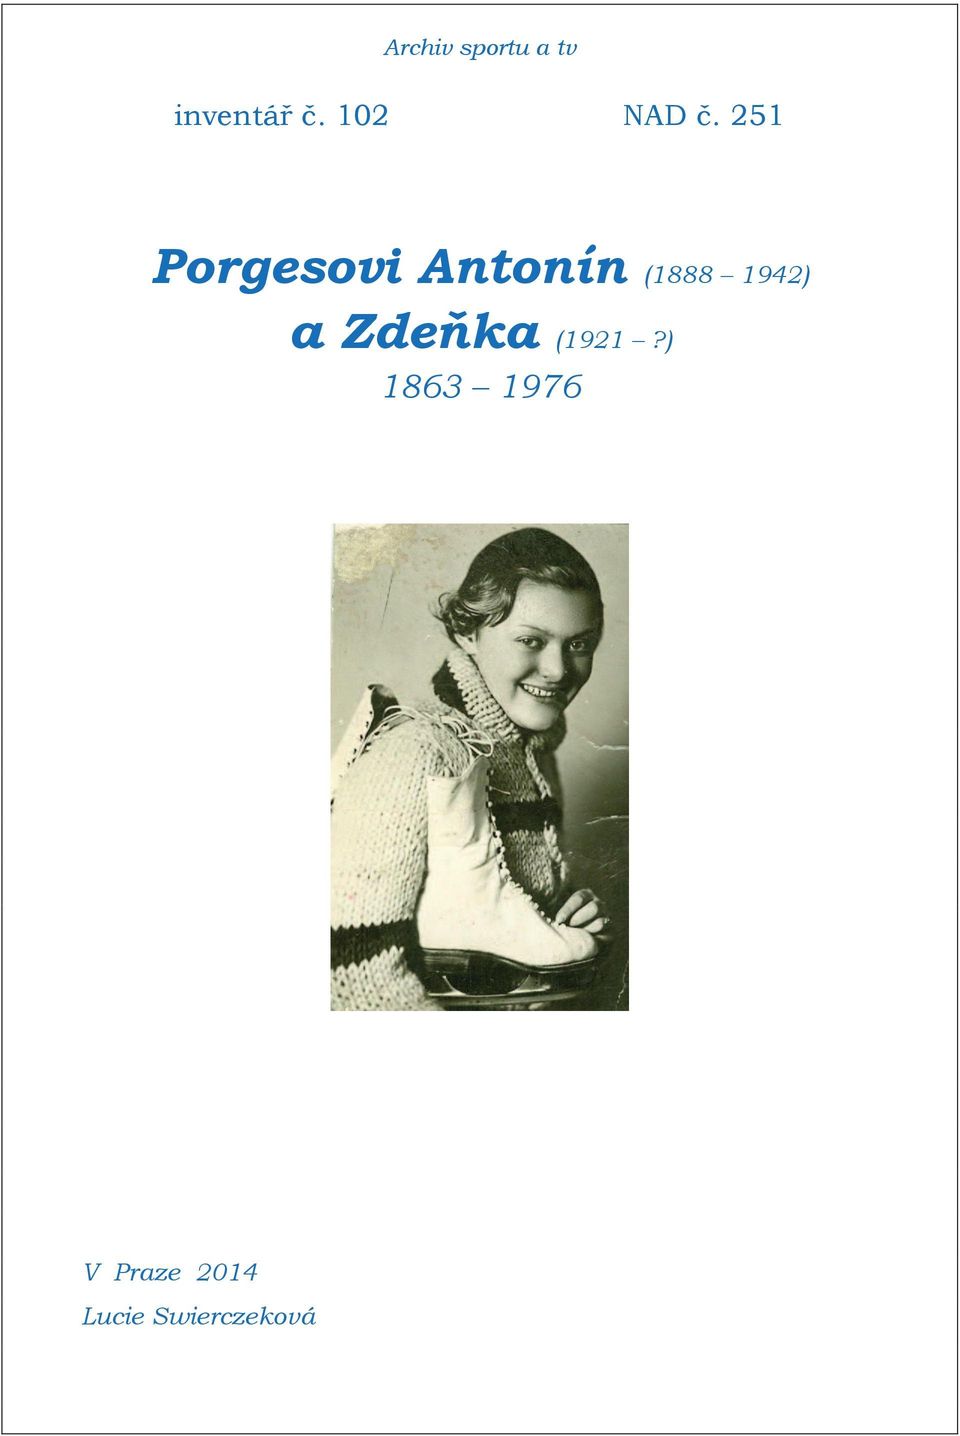 25 Porgesovi Antonín (888 942)